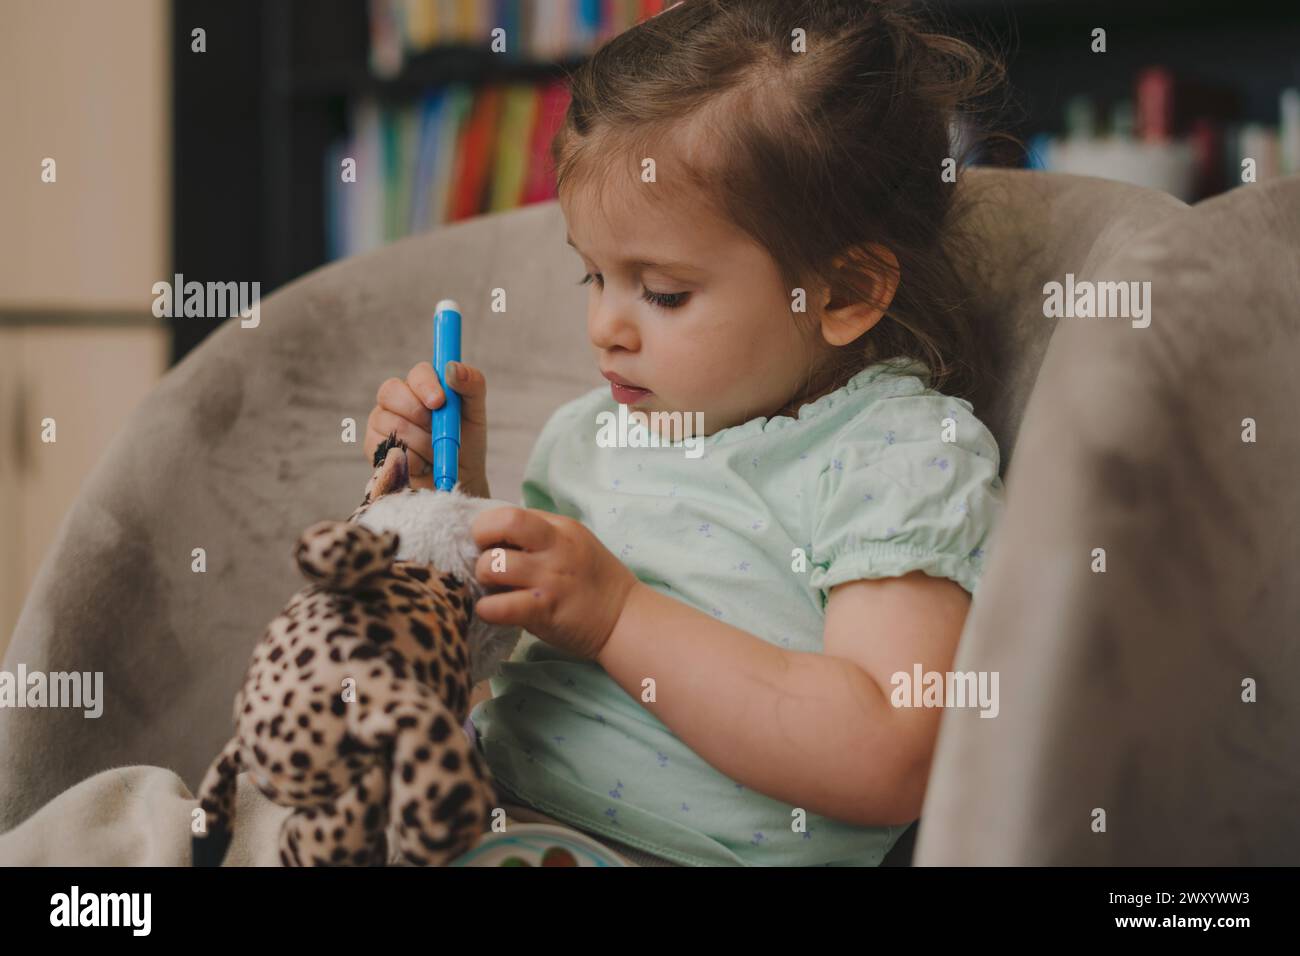 Porträt eines kleinen kaukasischen Mädchens, das zu Hause einen blauen Filzstift auf dem Schlafsofa hält und ein Kuscheltier verschmutzt. Kindheit Freizeit Spaß spielen Lernen Stockfoto